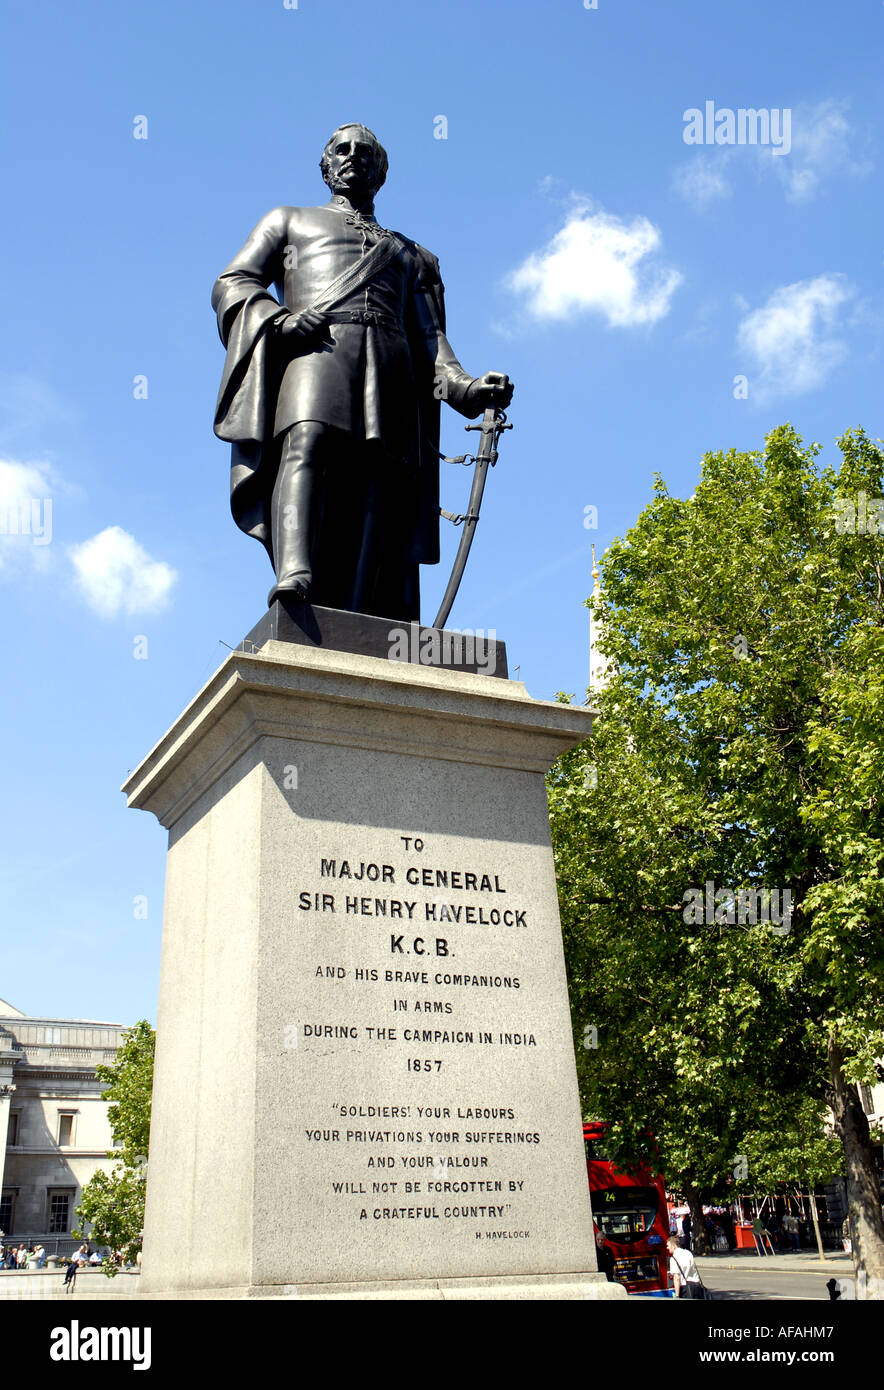 Statue du général John Havelock. Un monument en hommage à son campaaign en Inde 1857. Trafalgar Square, Londres, Angleterre Banque D'Images